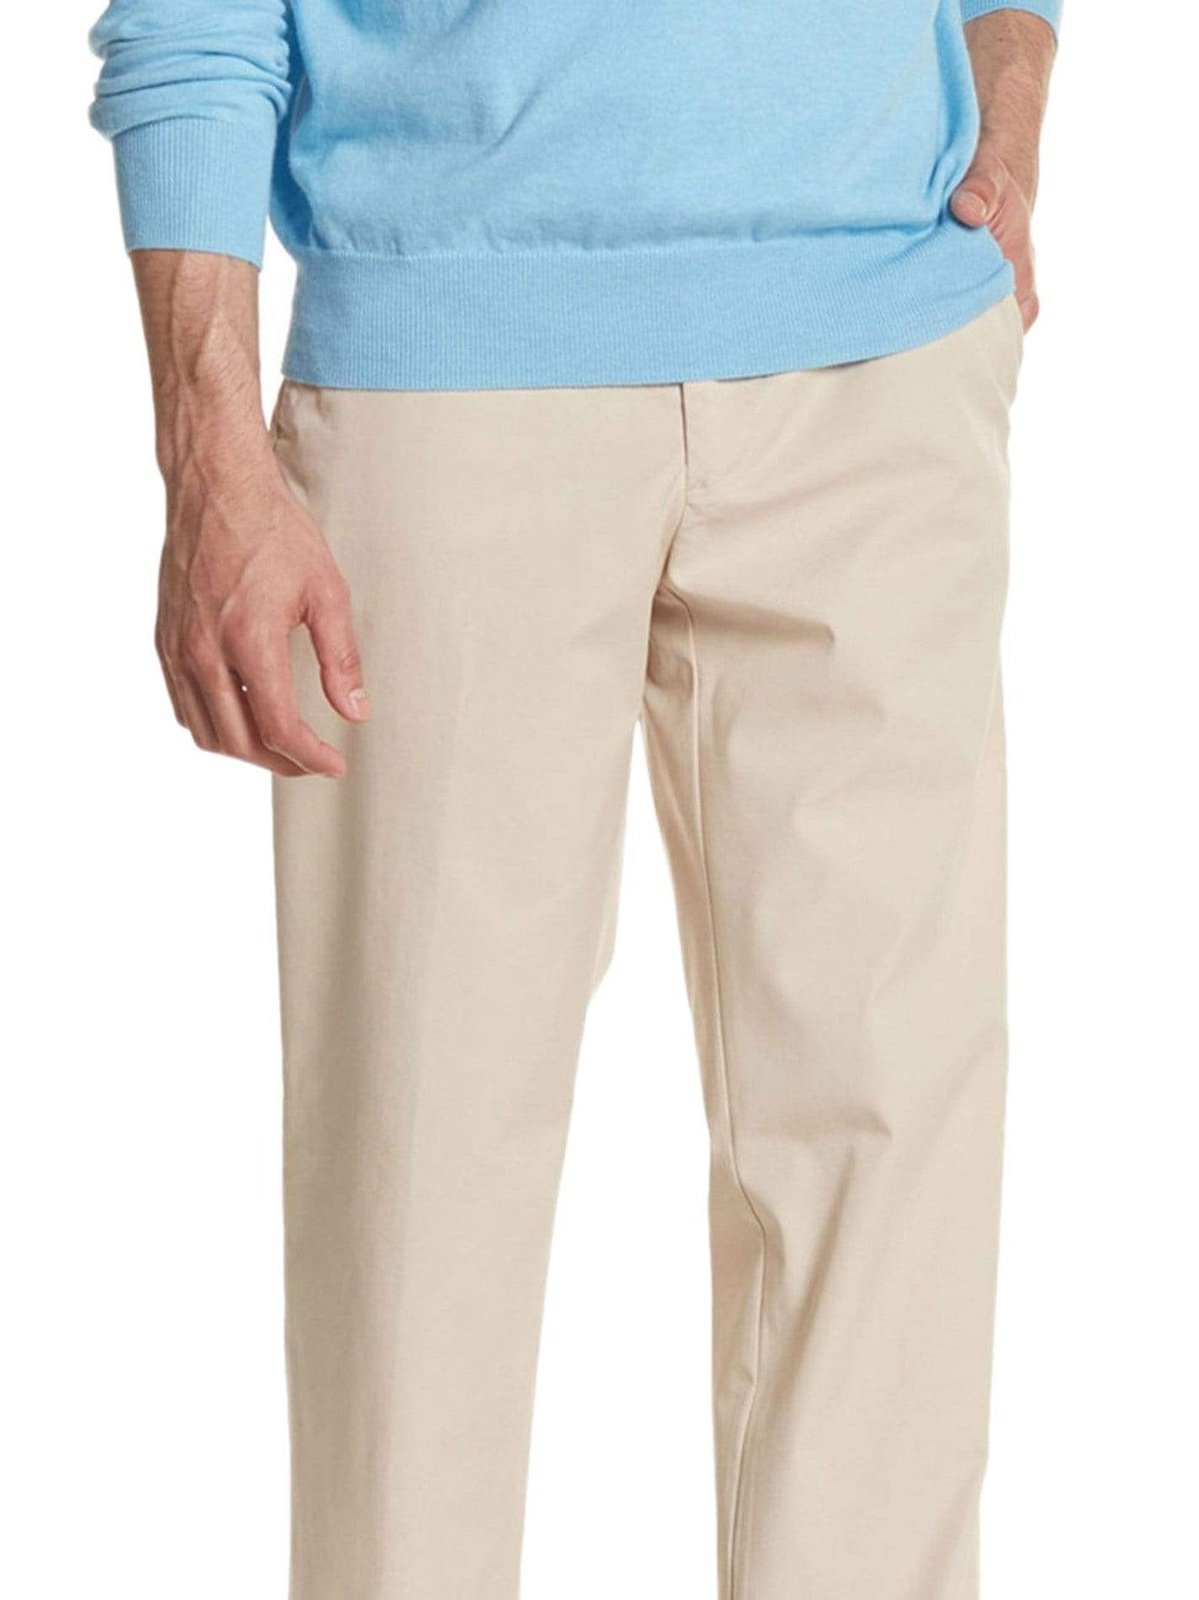 Ralph Lauren PANTS 32X30 Lauren Ralp Lauren Regular Fit Solid Tan Flat Front Cotton Dress Pants